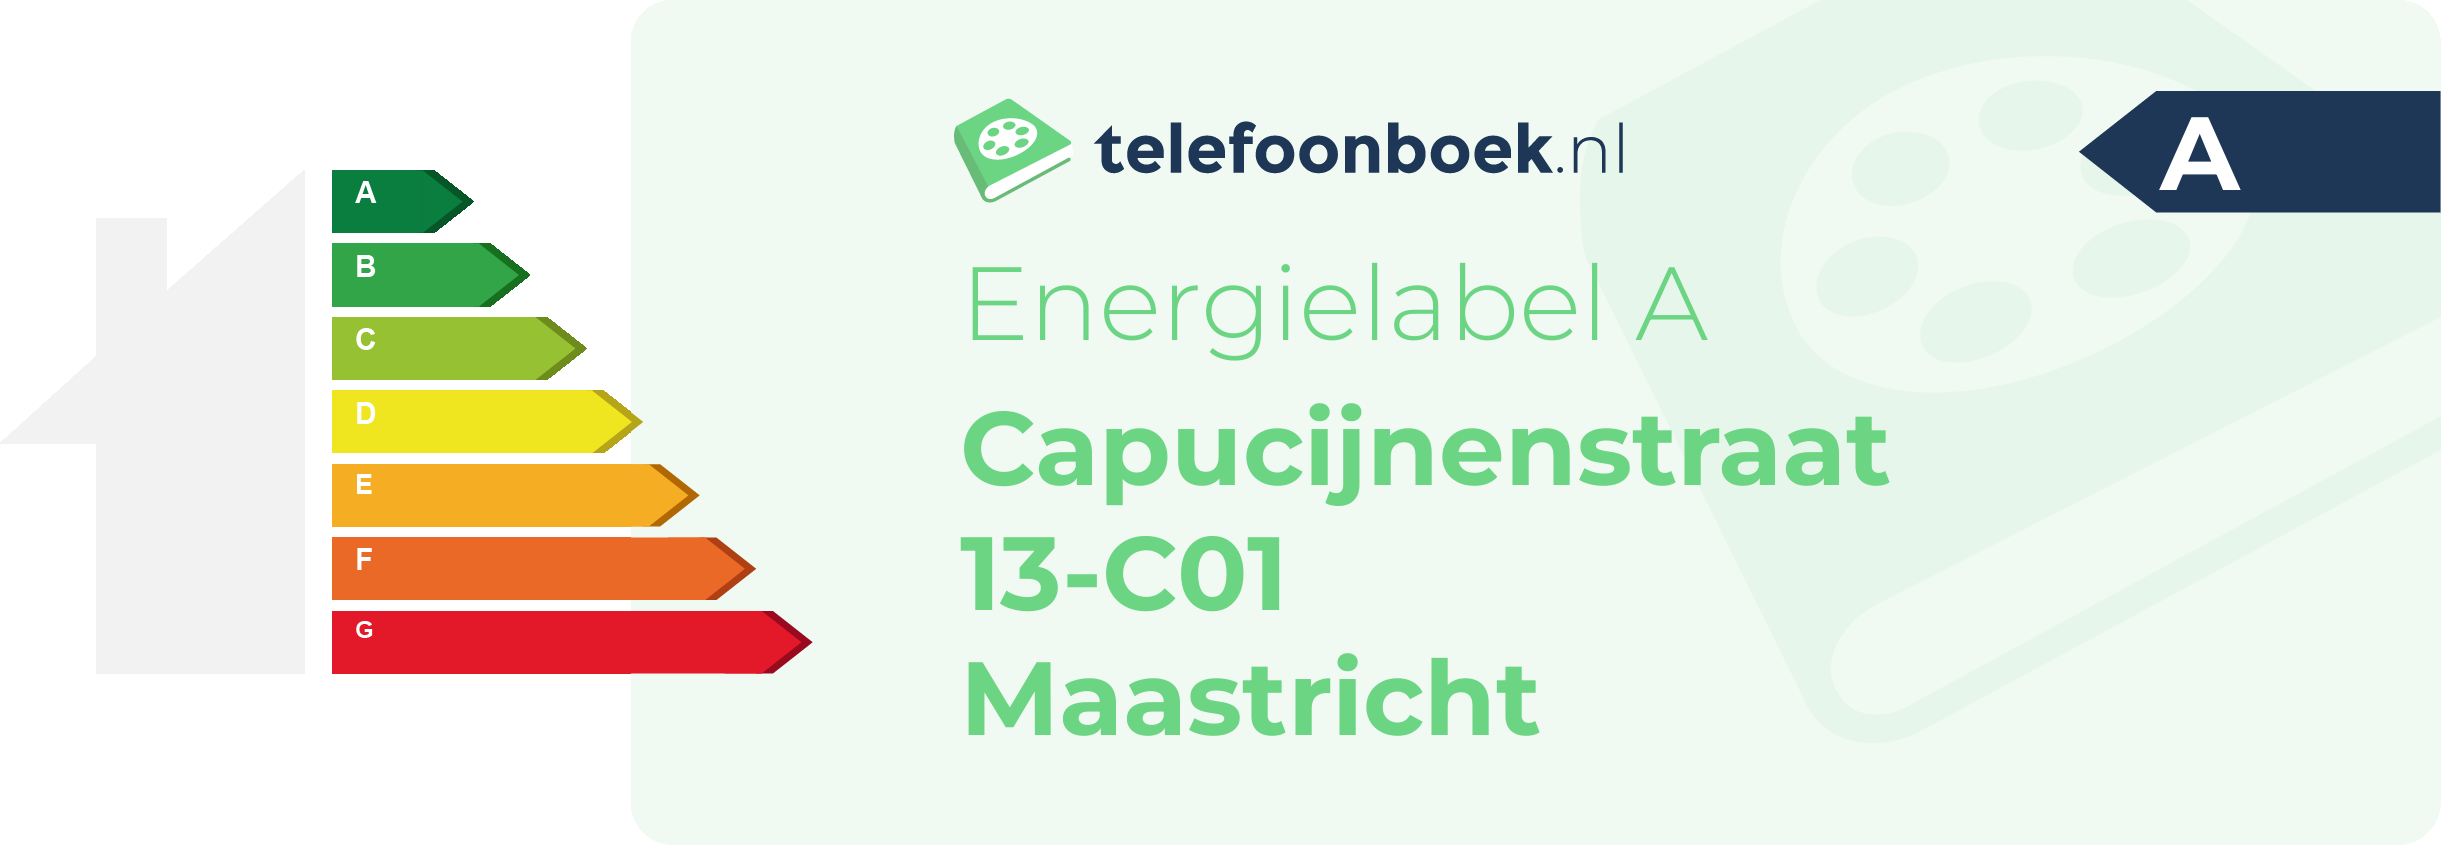 Energielabel Capucijnenstraat 13-C01 Maastricht